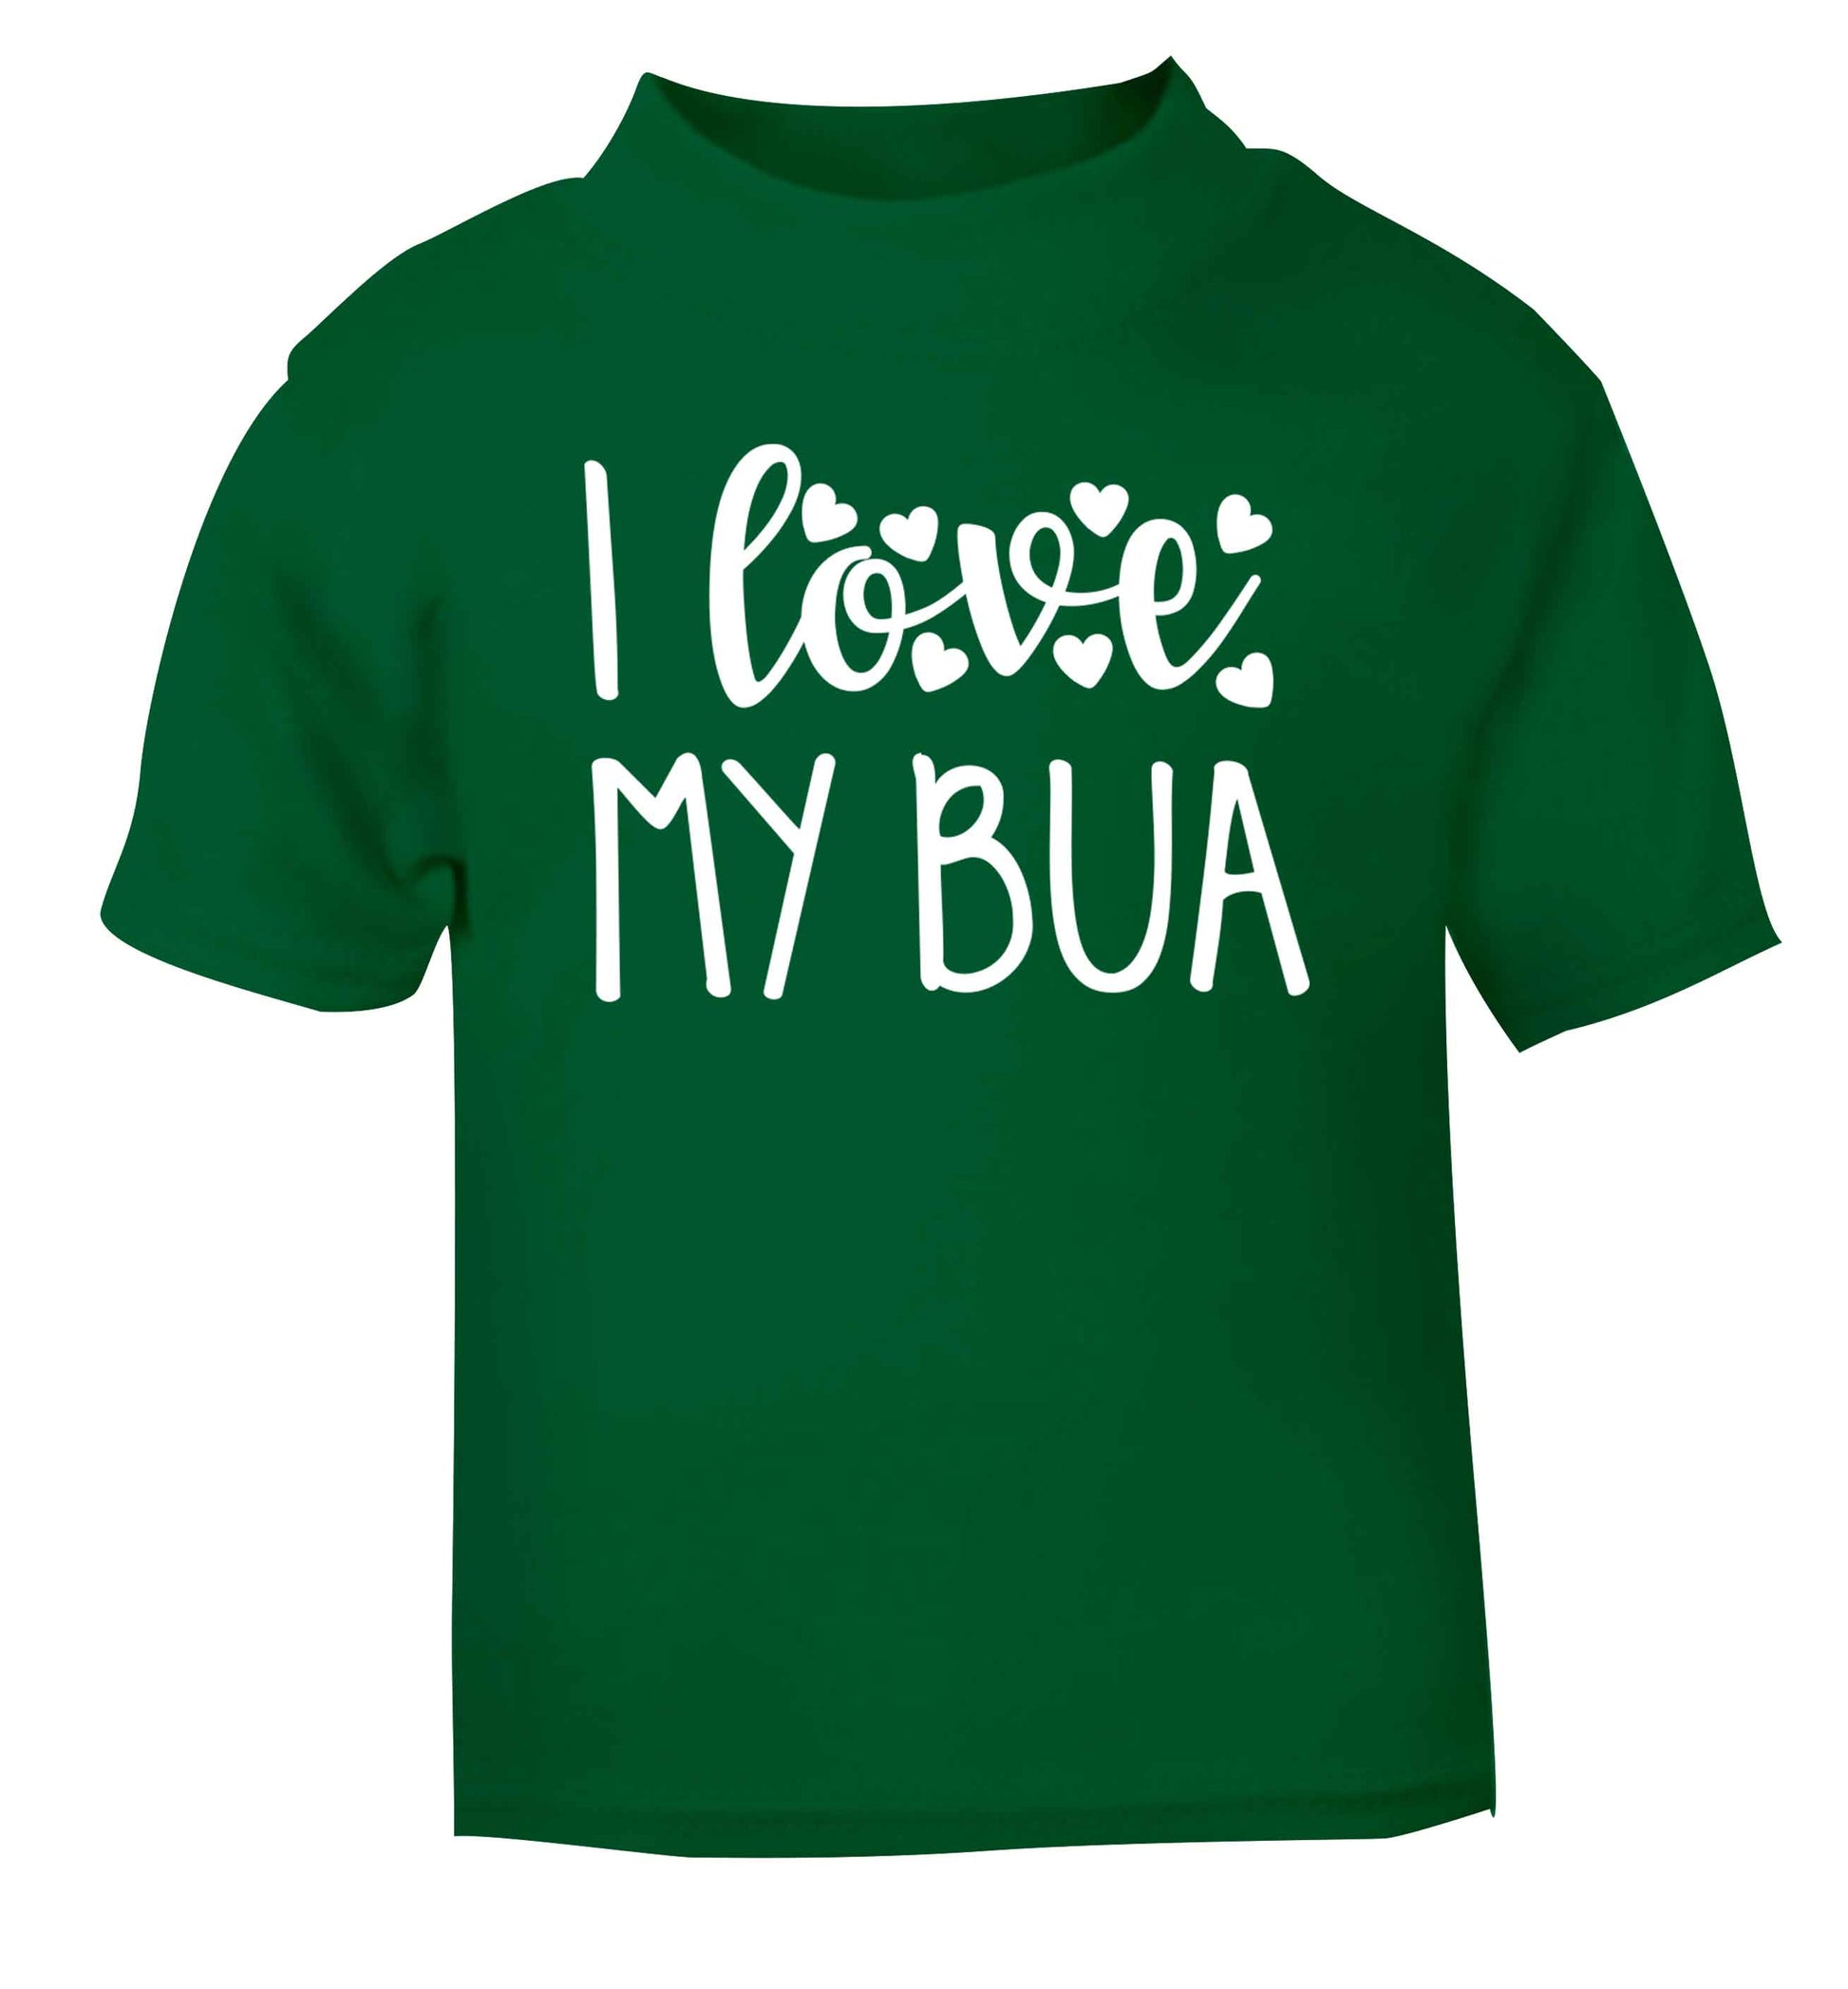 I love my bua green Baby Toddler Tshirt 2 Years